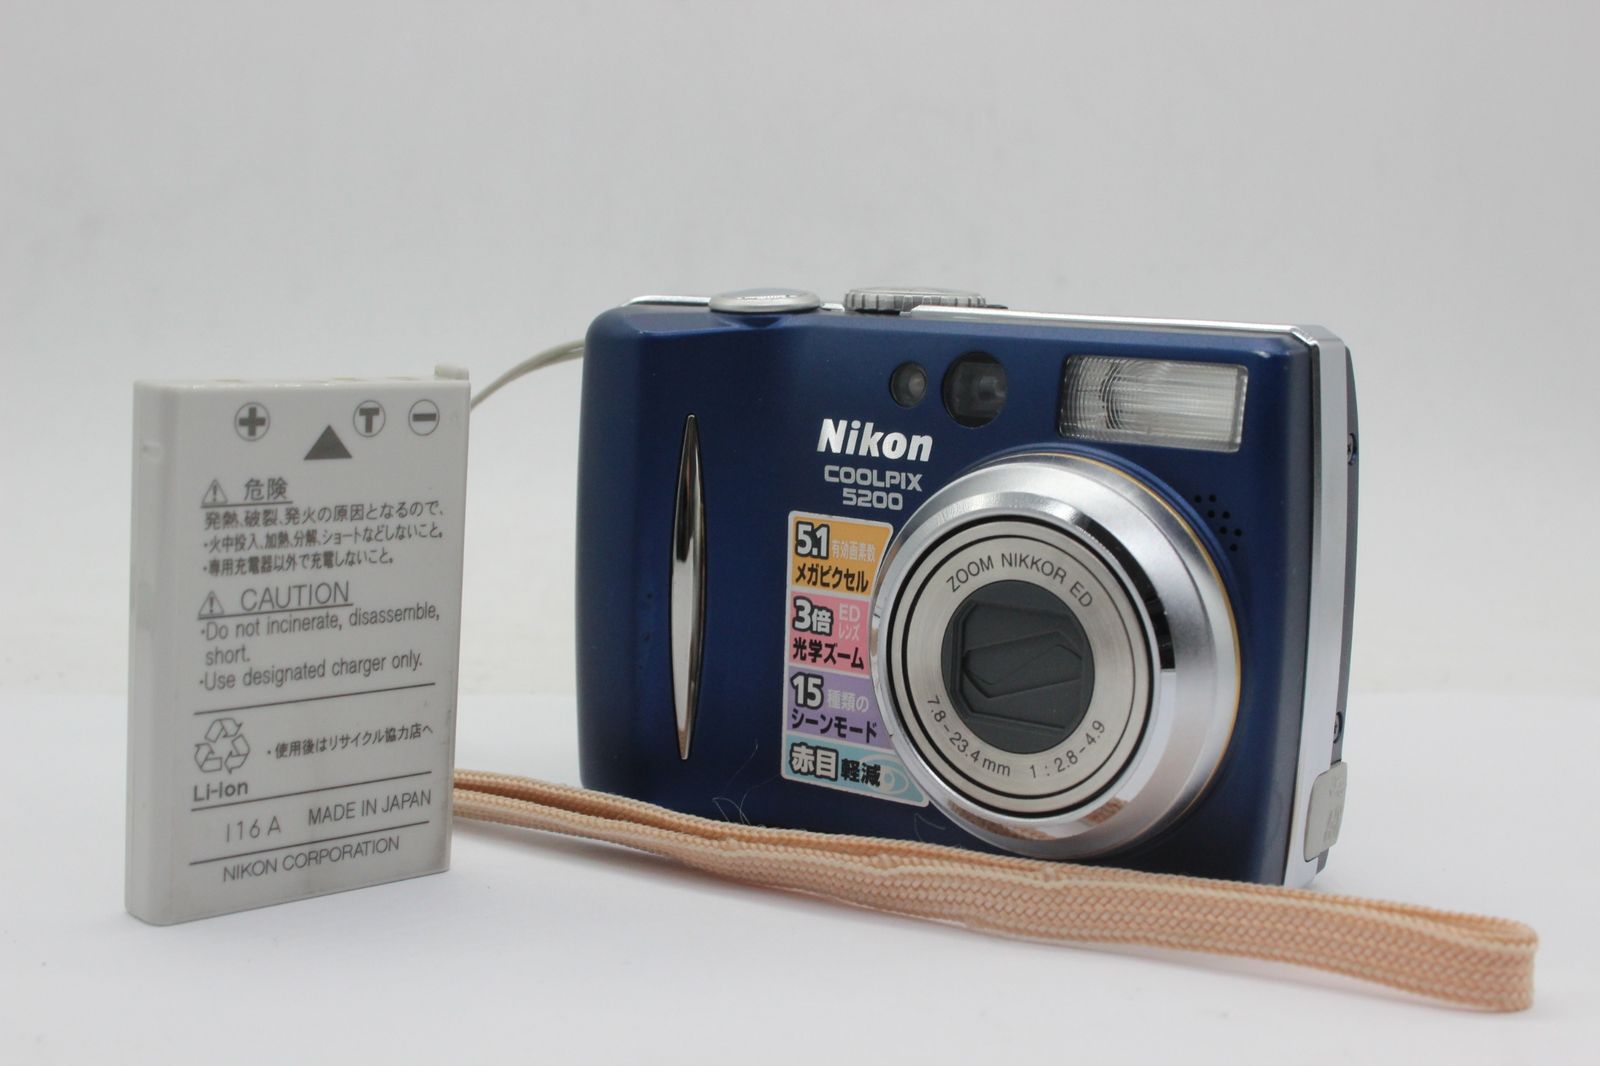 ニコン 【返品保証】 ニコン Nikon Coolpix E5200 ブルー バッテリー付き コンパクトデジタルカメラ v1105